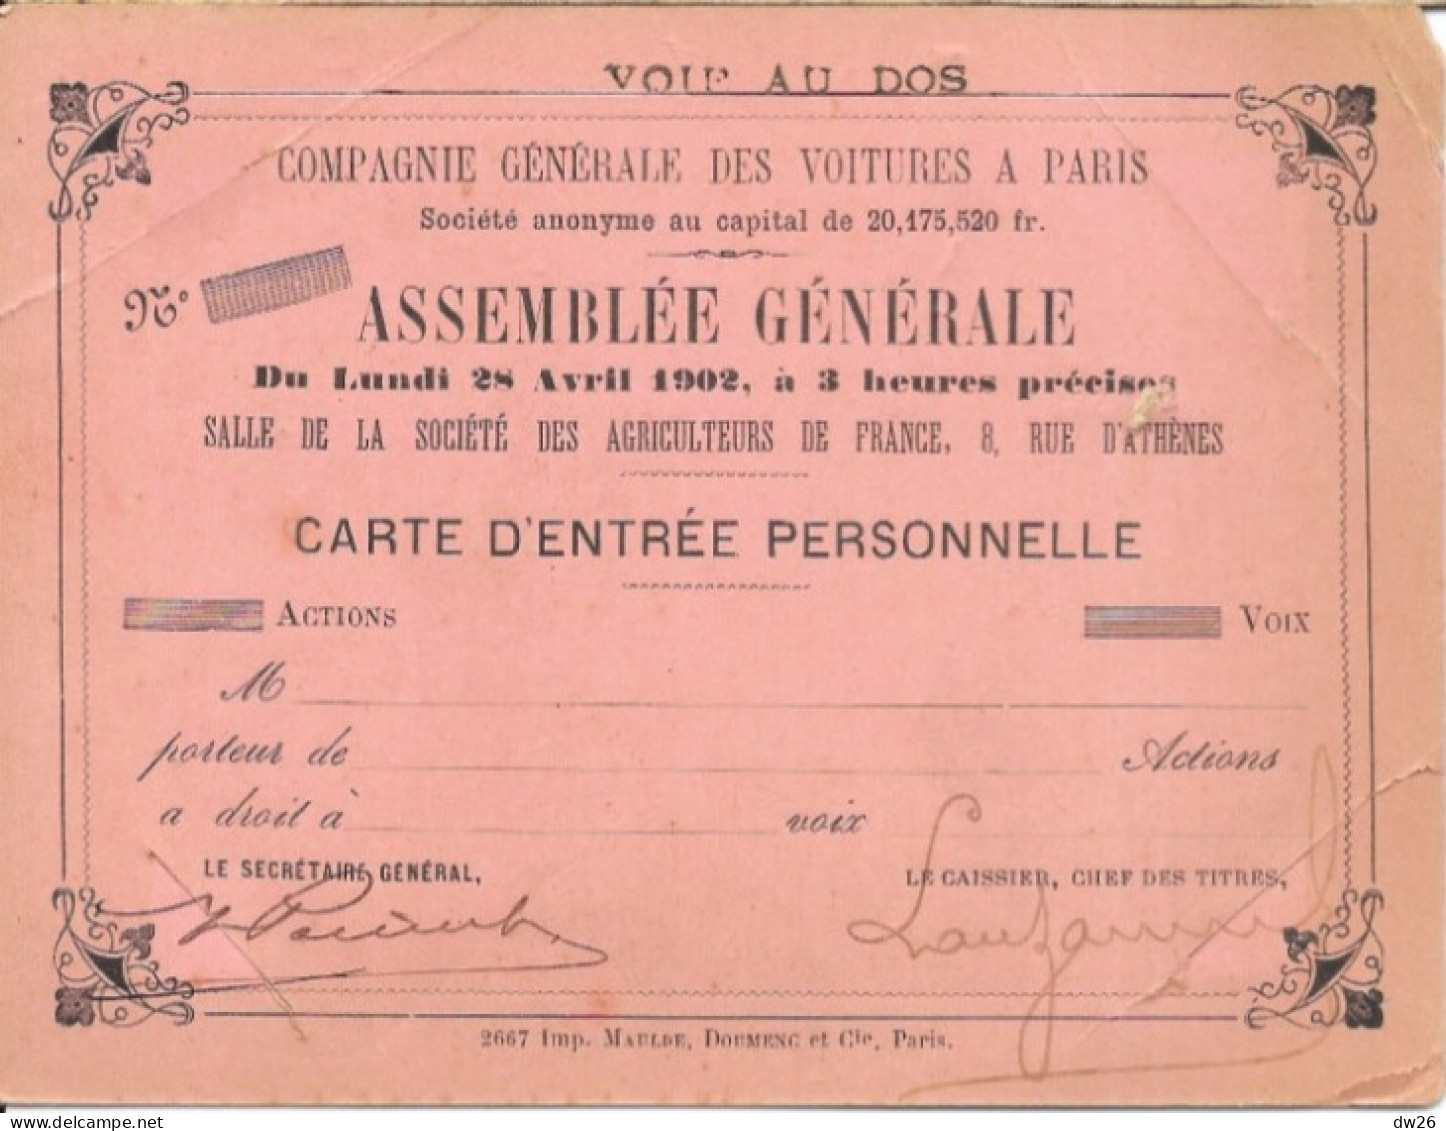 Compagnie Générale Des Voitures à Paris - Carte D'Entrée Pour L'Assemblée Générale 28 Avril 1902 - Automobili